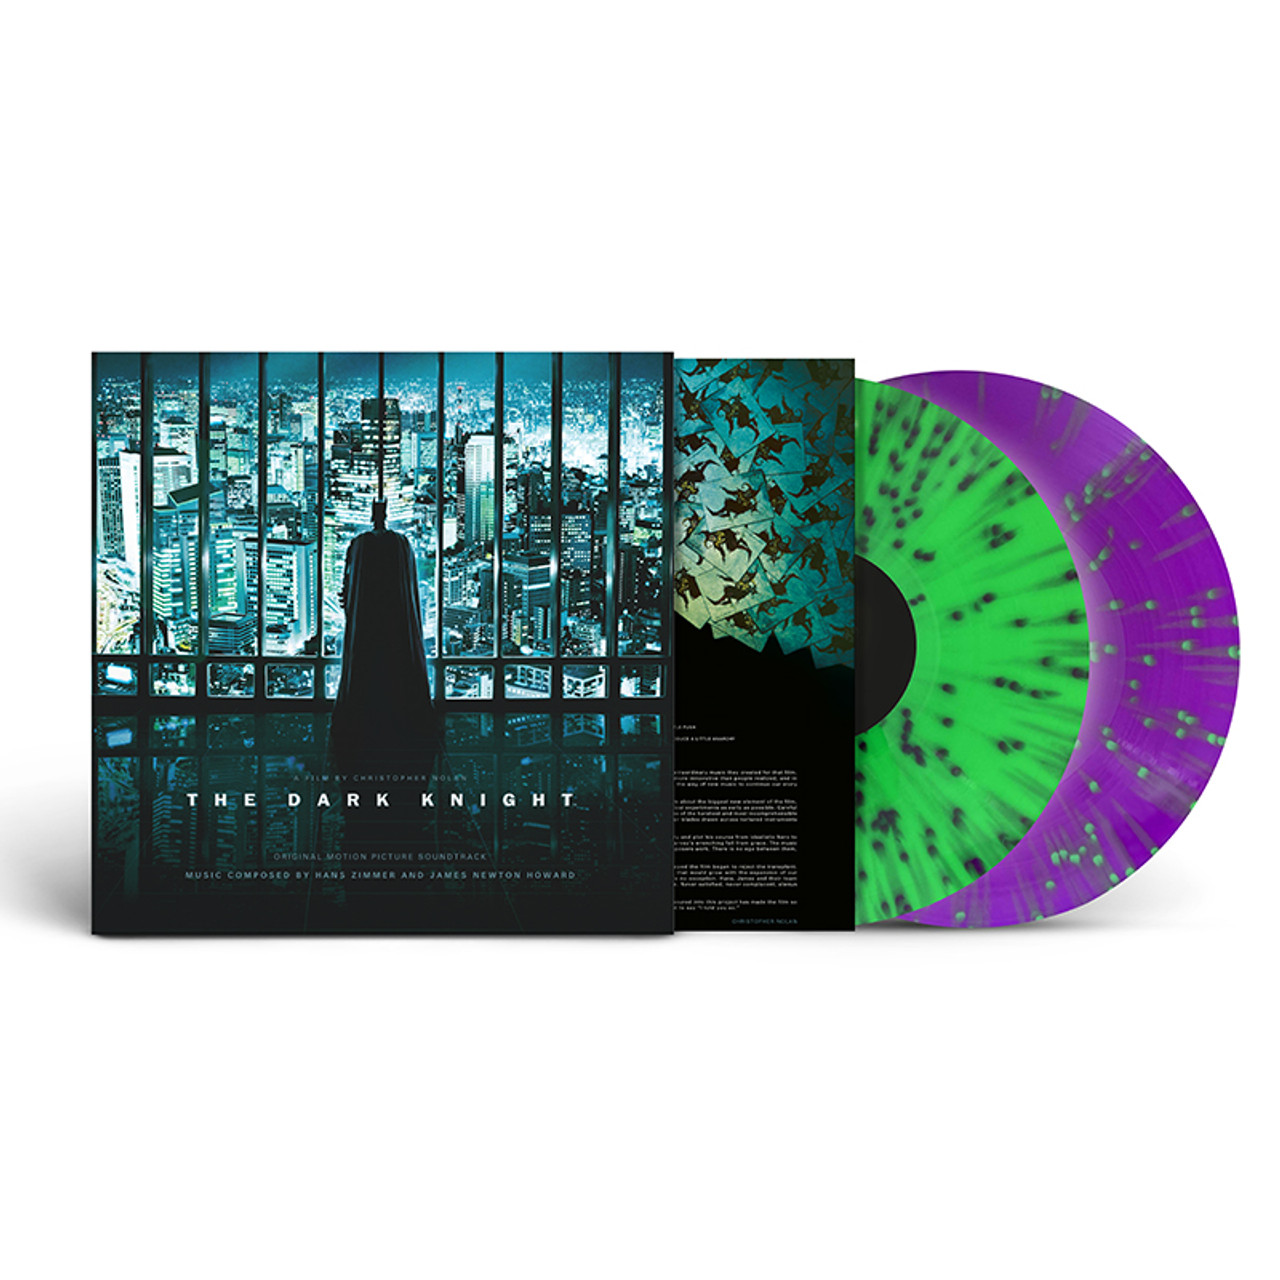 Joker inspired double neon green and violet splatter vinyl